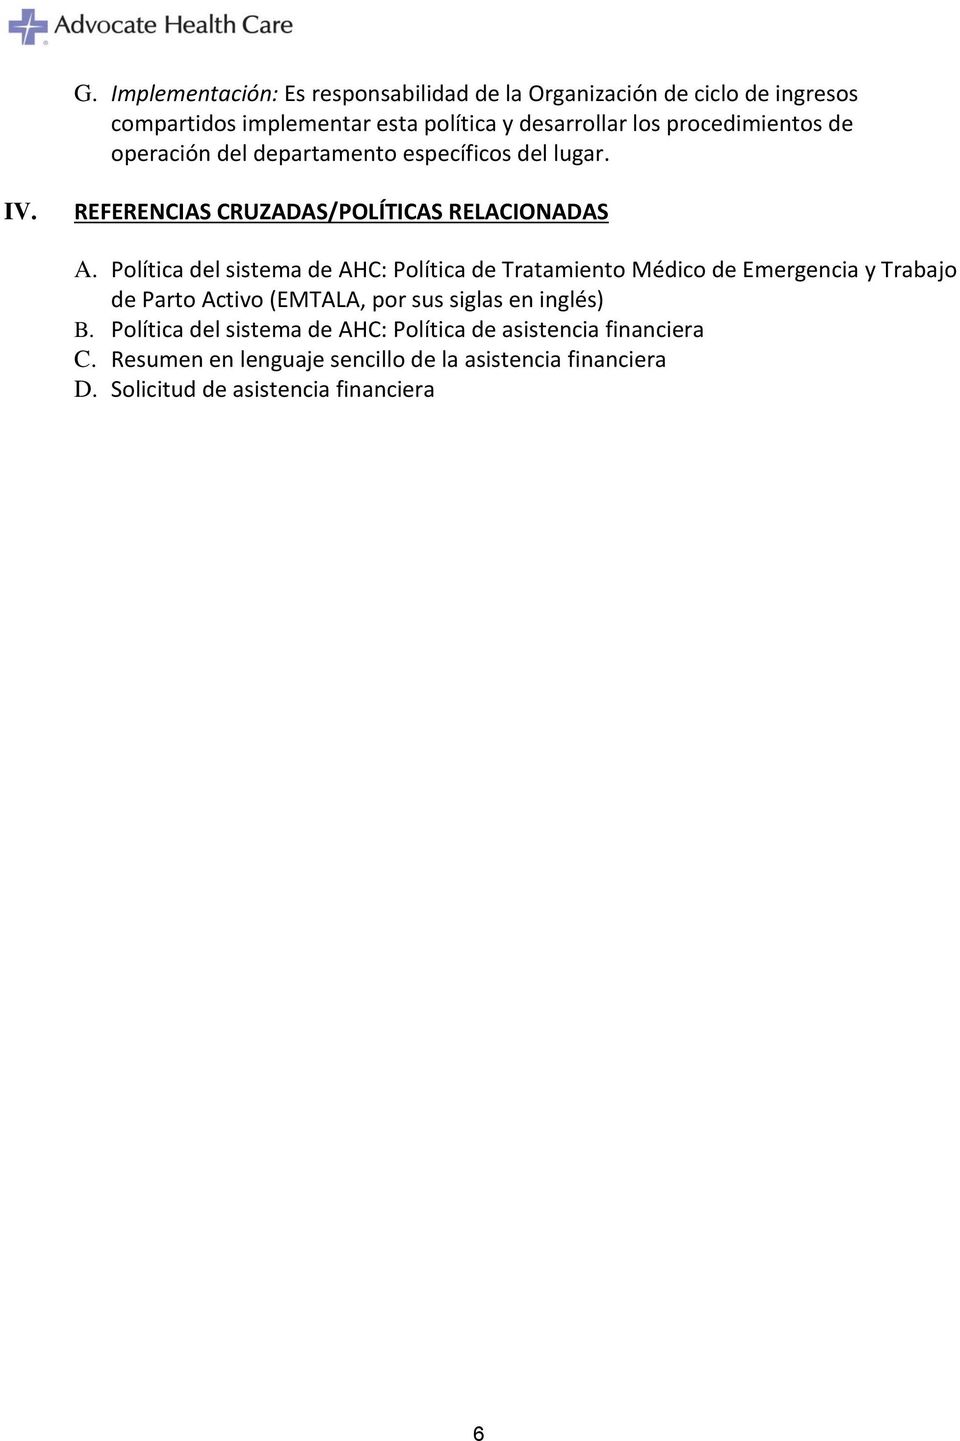 Política del sistema de AHC: Política de Tratamiento Médico de Emergencia y Trabajo de Parto Activo (EMTALA, por sus siglas en inglés) B.